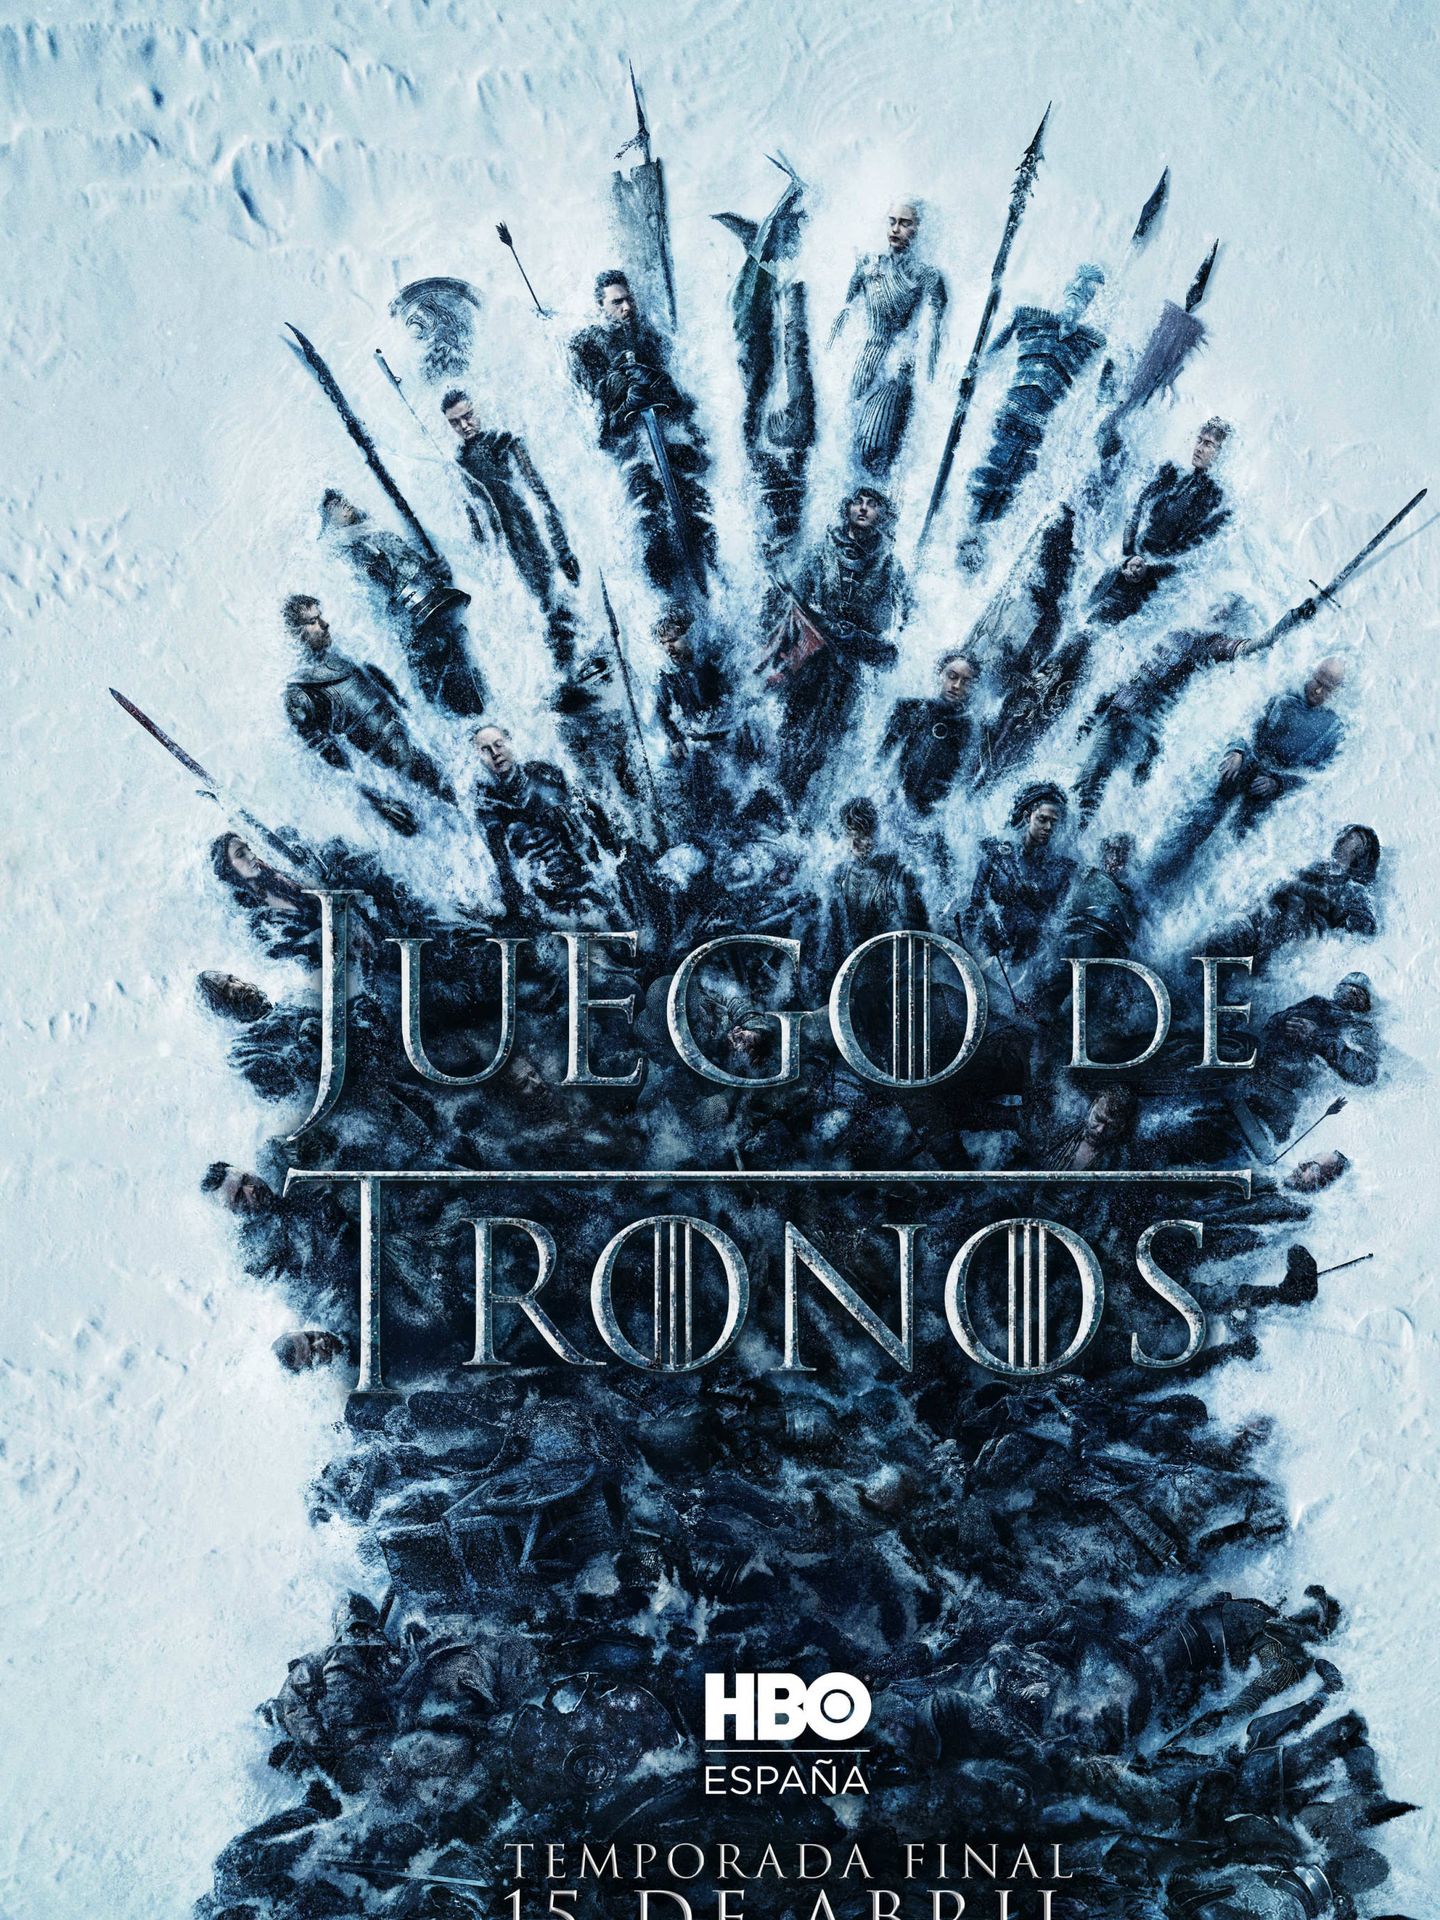 Cartel promocional de la temporada final de 'Juego de tronos'. (HBO)